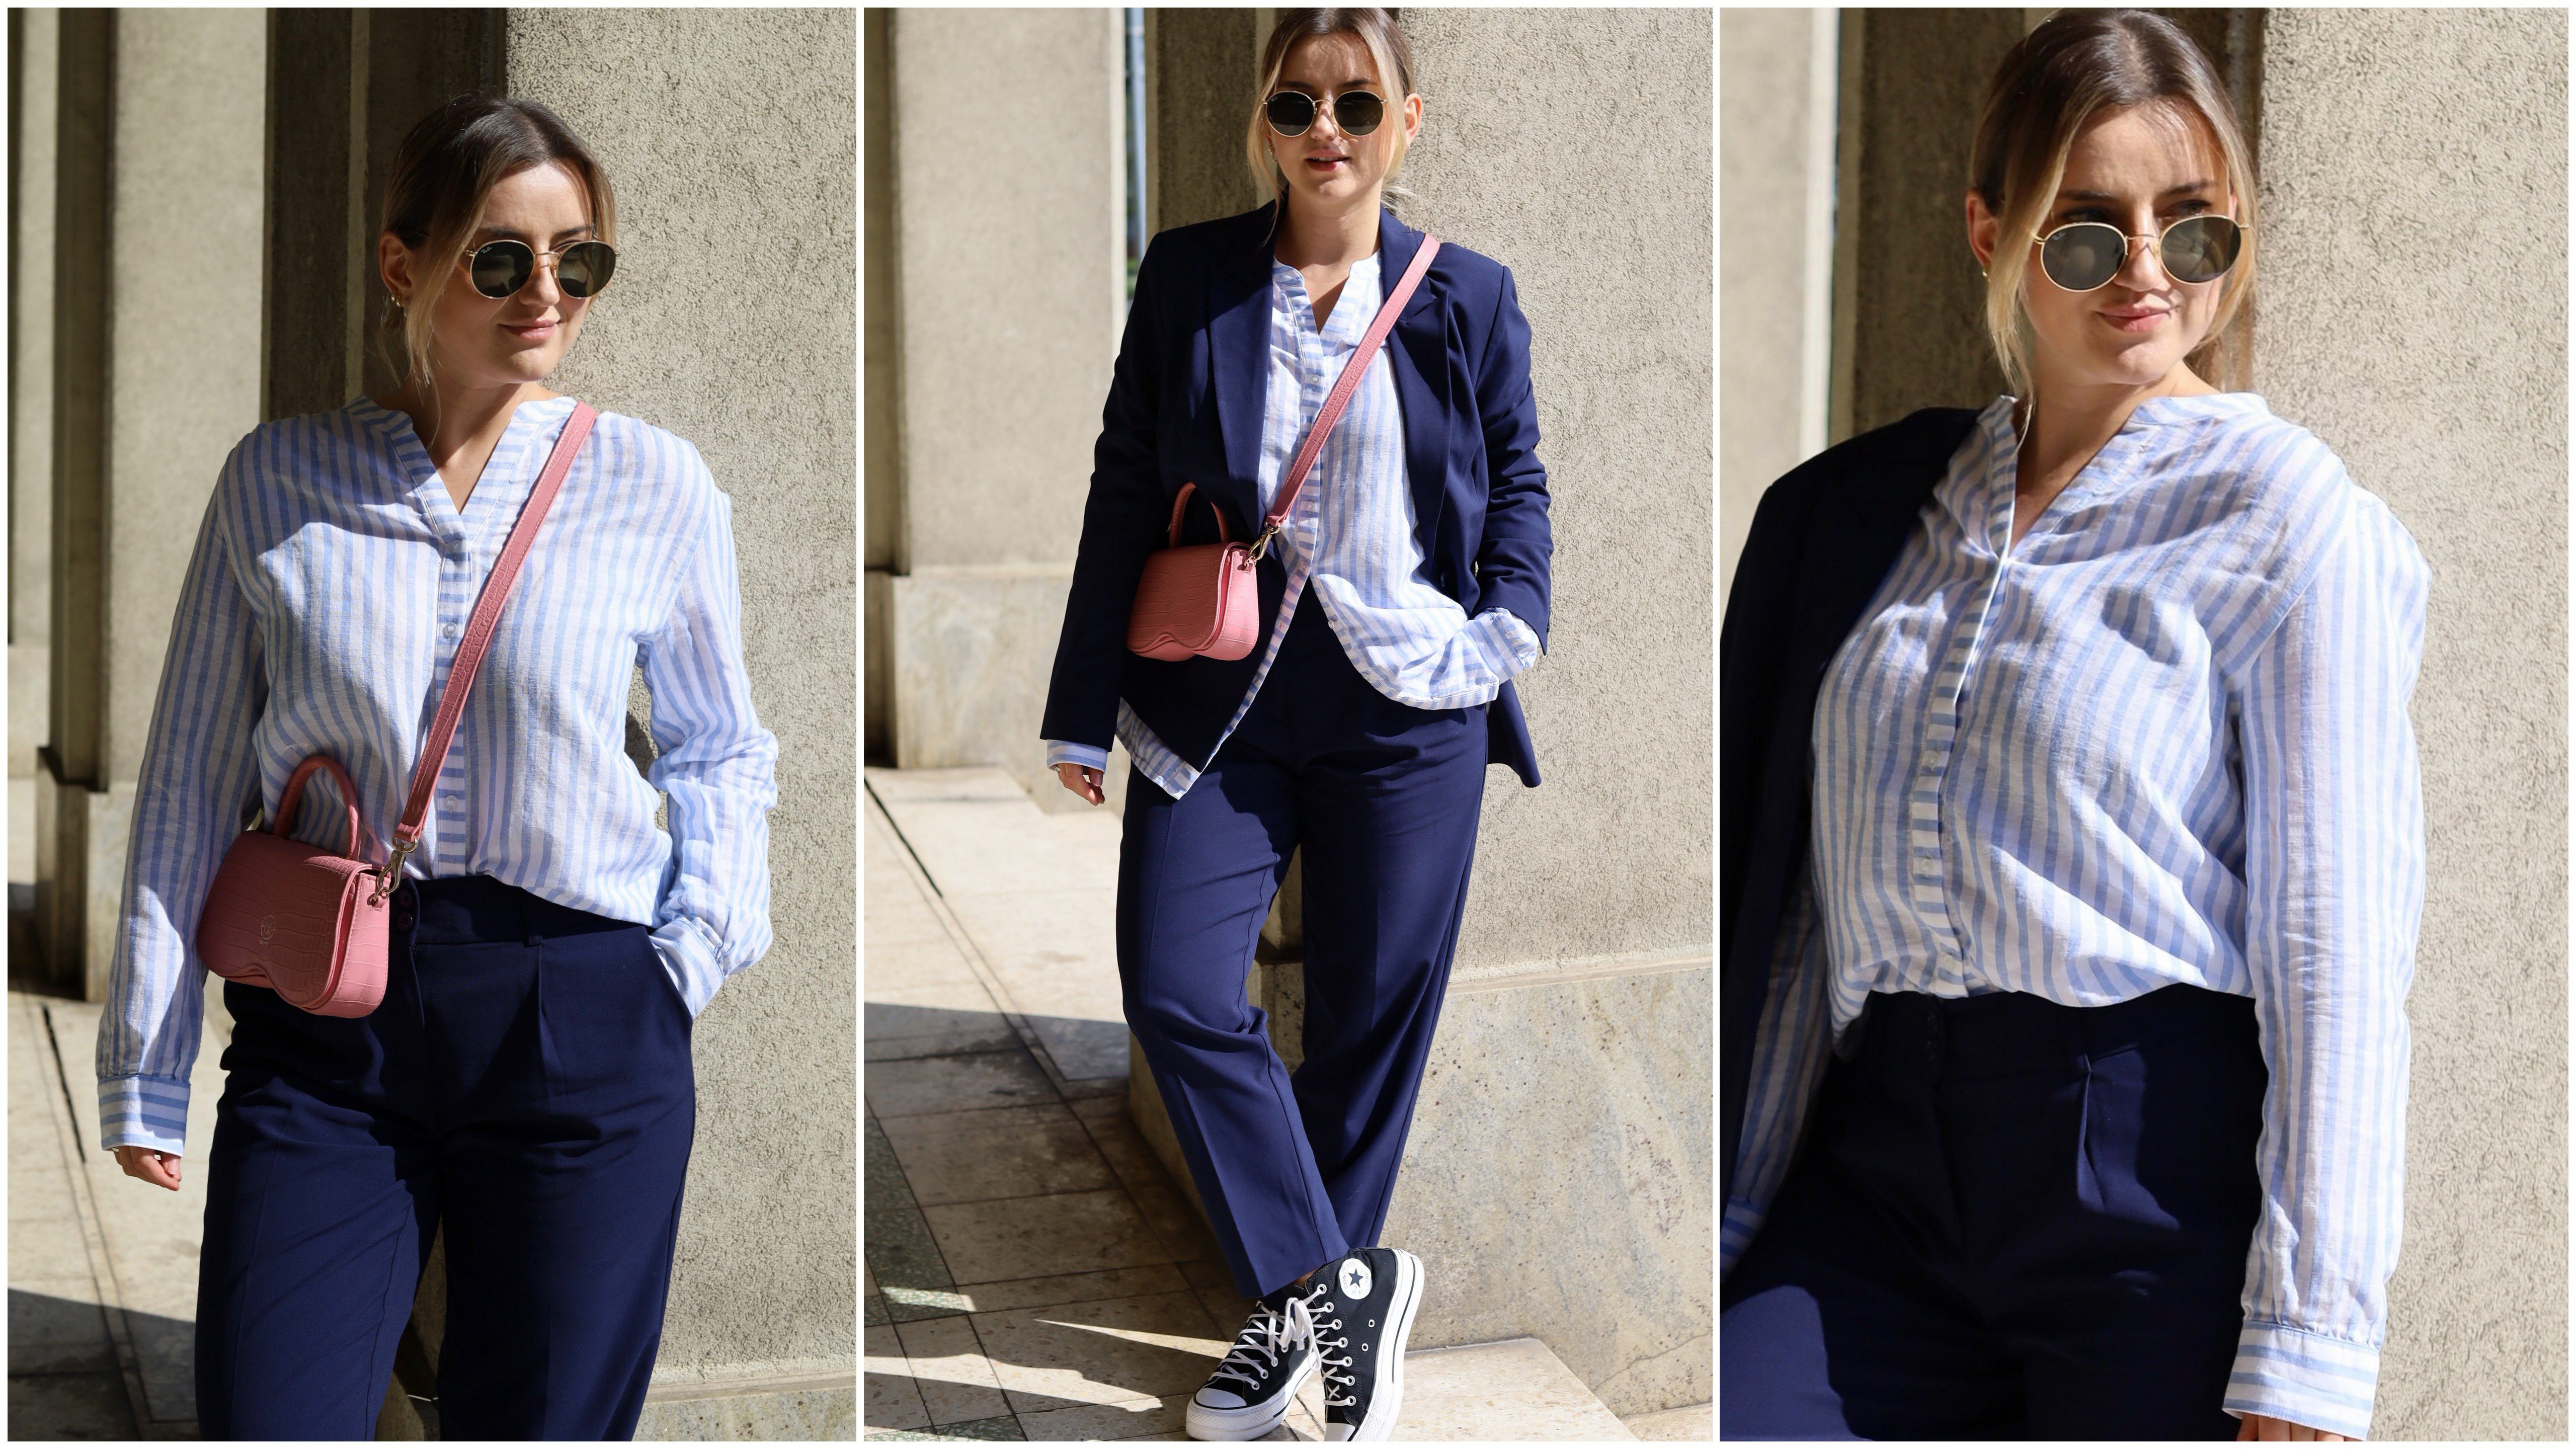 Paulina mag Stilbrüche und liebt die Kombination aus der gestreiften Bluse mit dem eleganten, dunkelblauen Anzug und Sneakern.